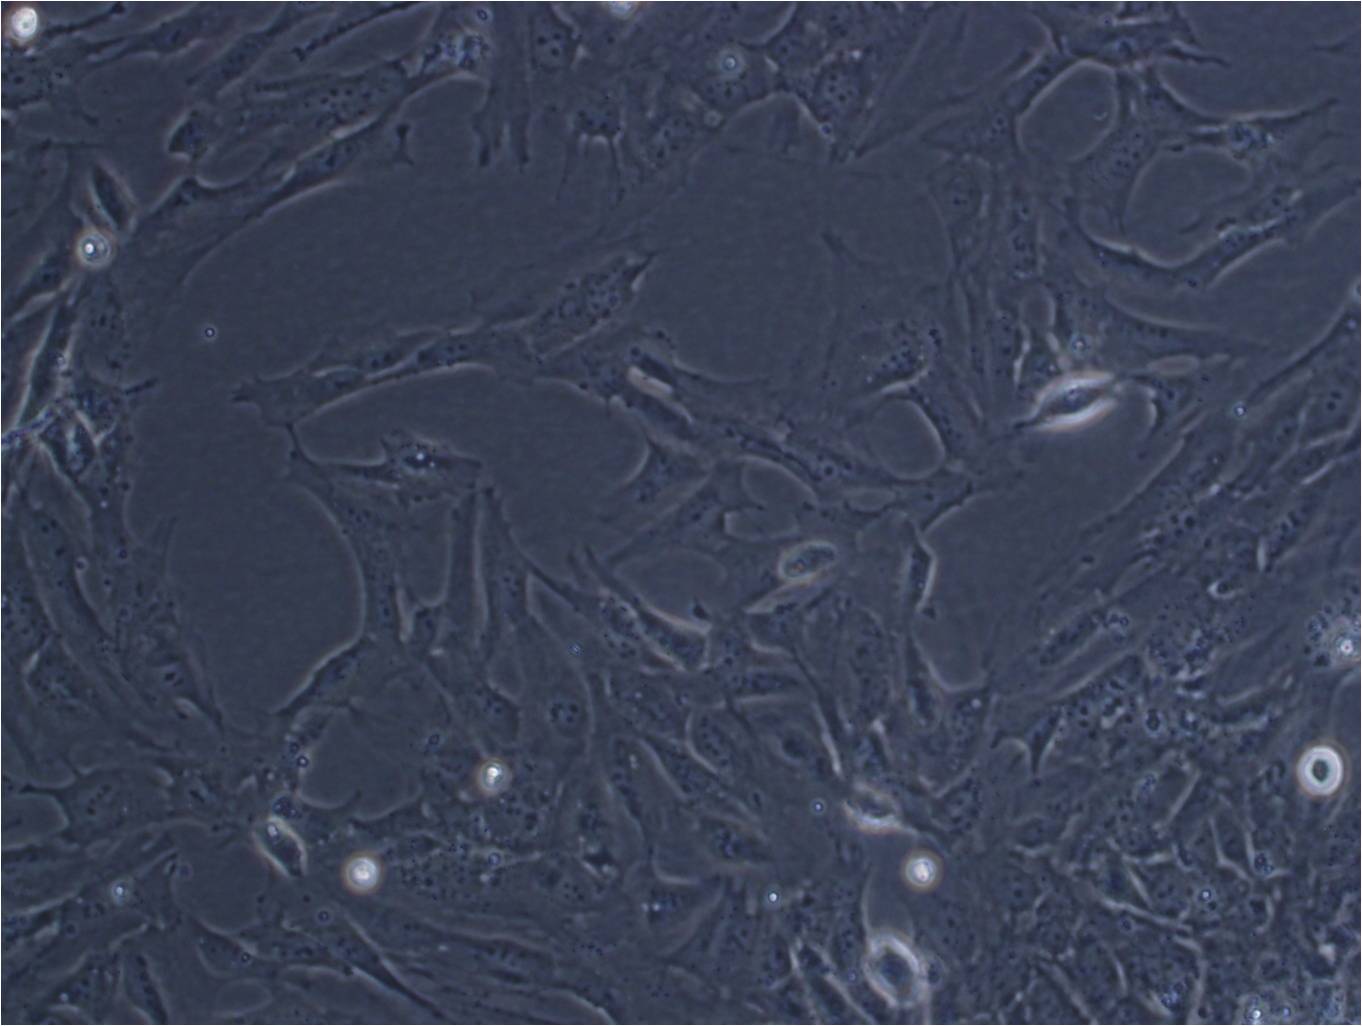 mIMCD-3:小鼠肾脏内髓集合管3上皮复苏细胞(提供STR鉴定图谱)